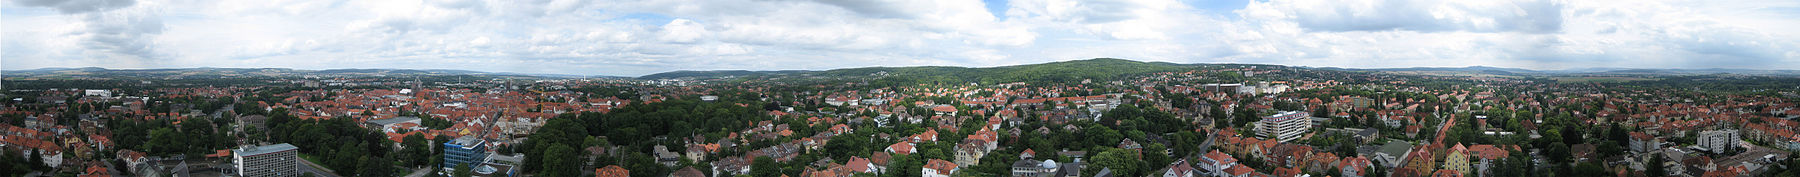 Goettingeni panorama.jpg